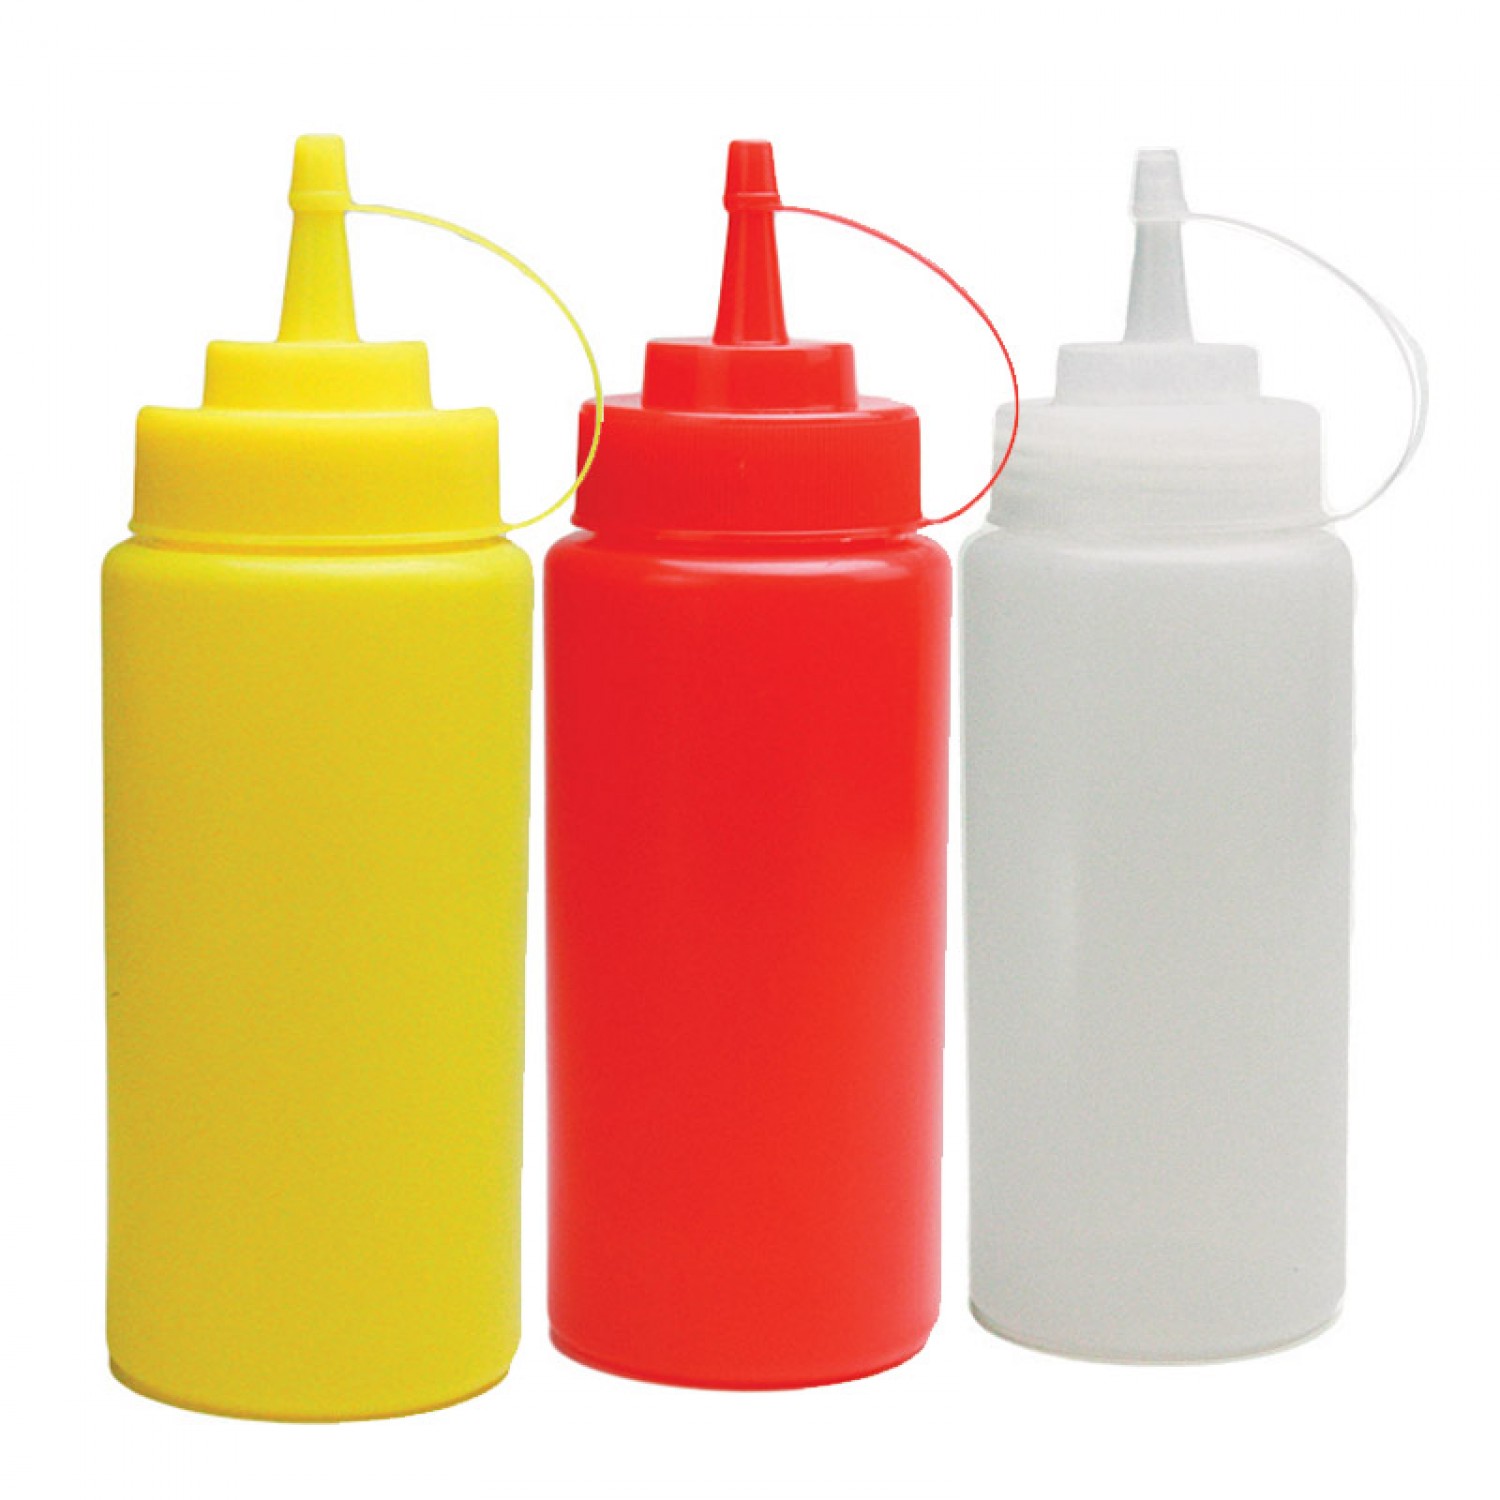 Μπουκάλι πλαστικό σερβιρίσματος Κίτρινο χρώμα 24oz (700ml)